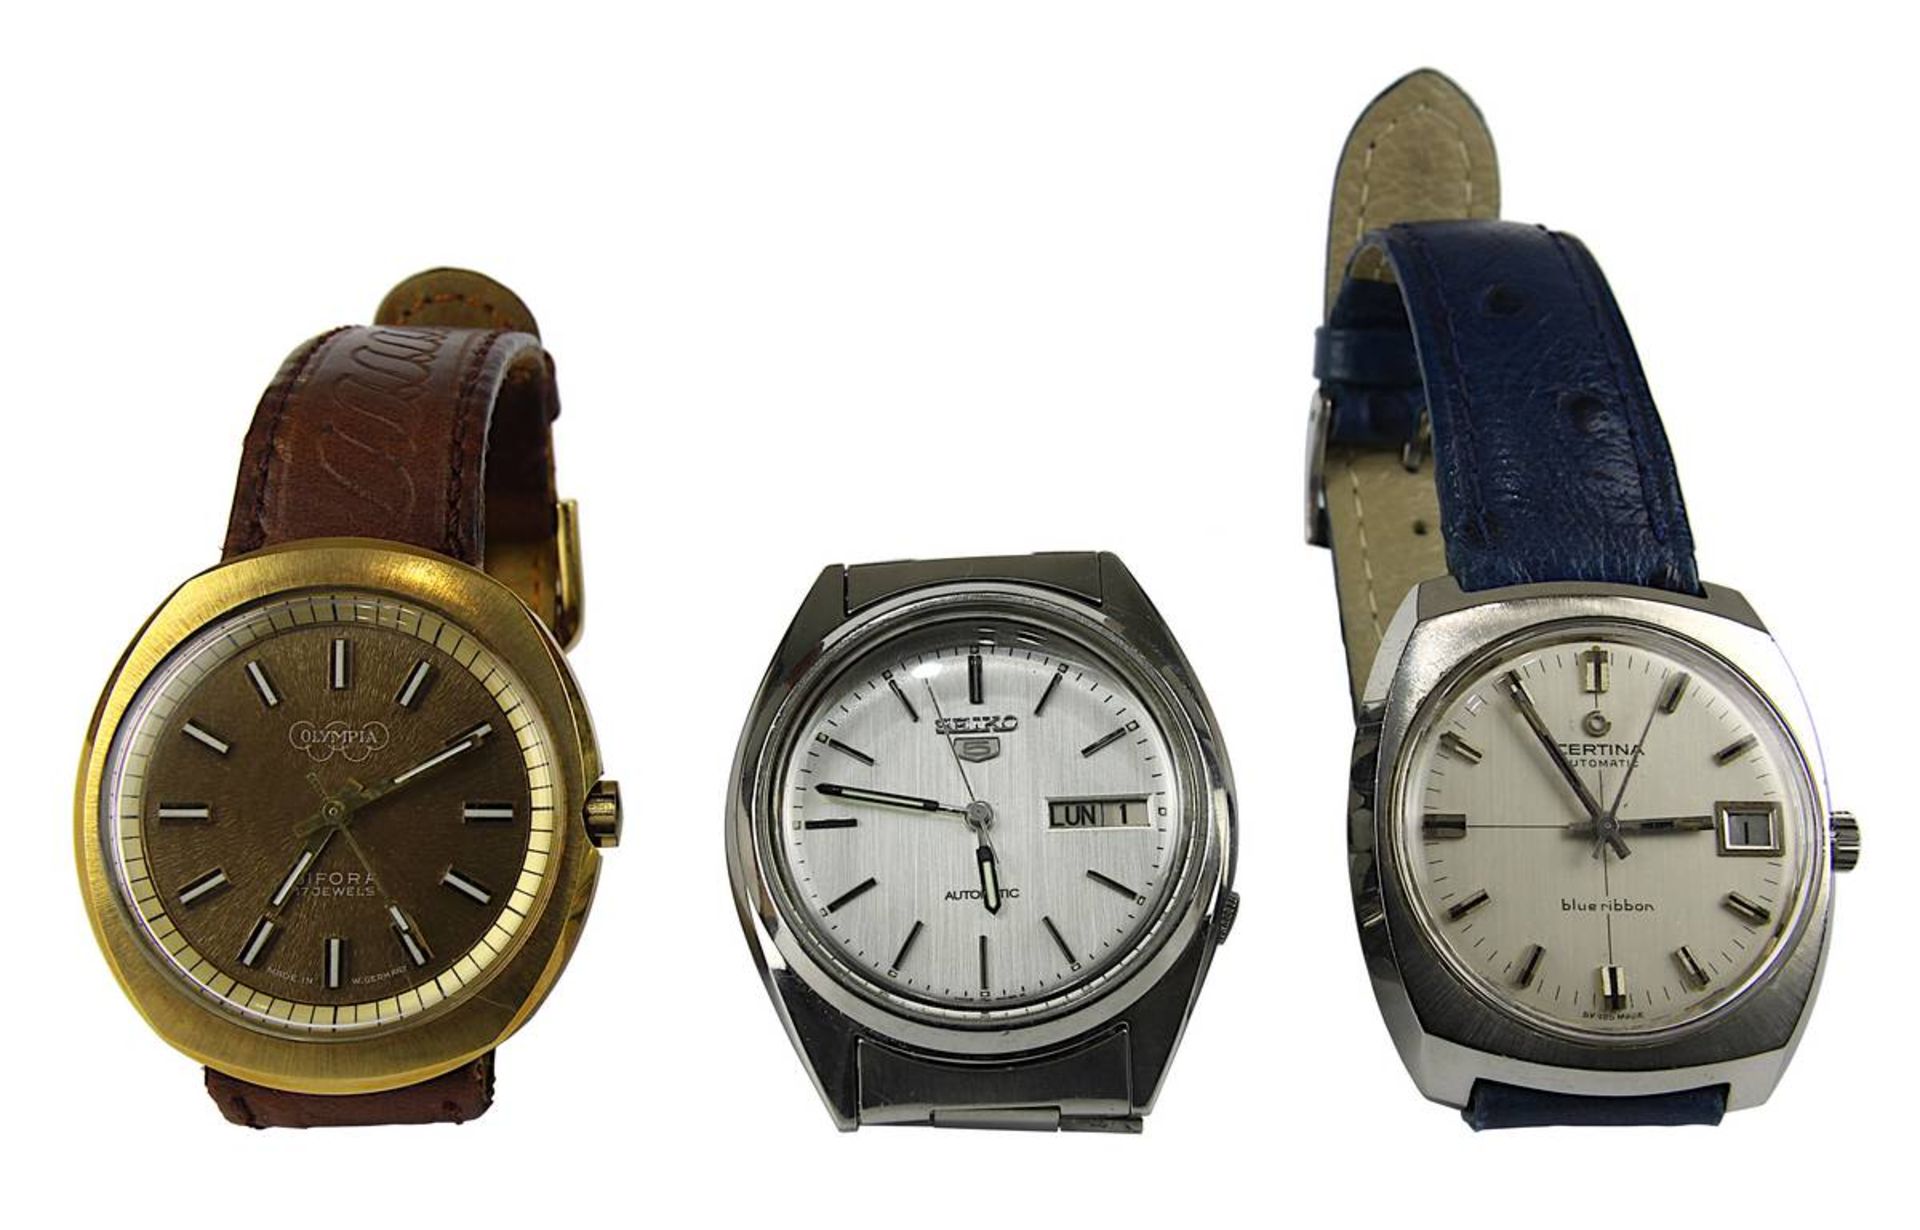 3 Herren-Armbanduhren Seiko, Certina und Olympia 1970er Jahre: Seiko mit japanischem Automatikwerk